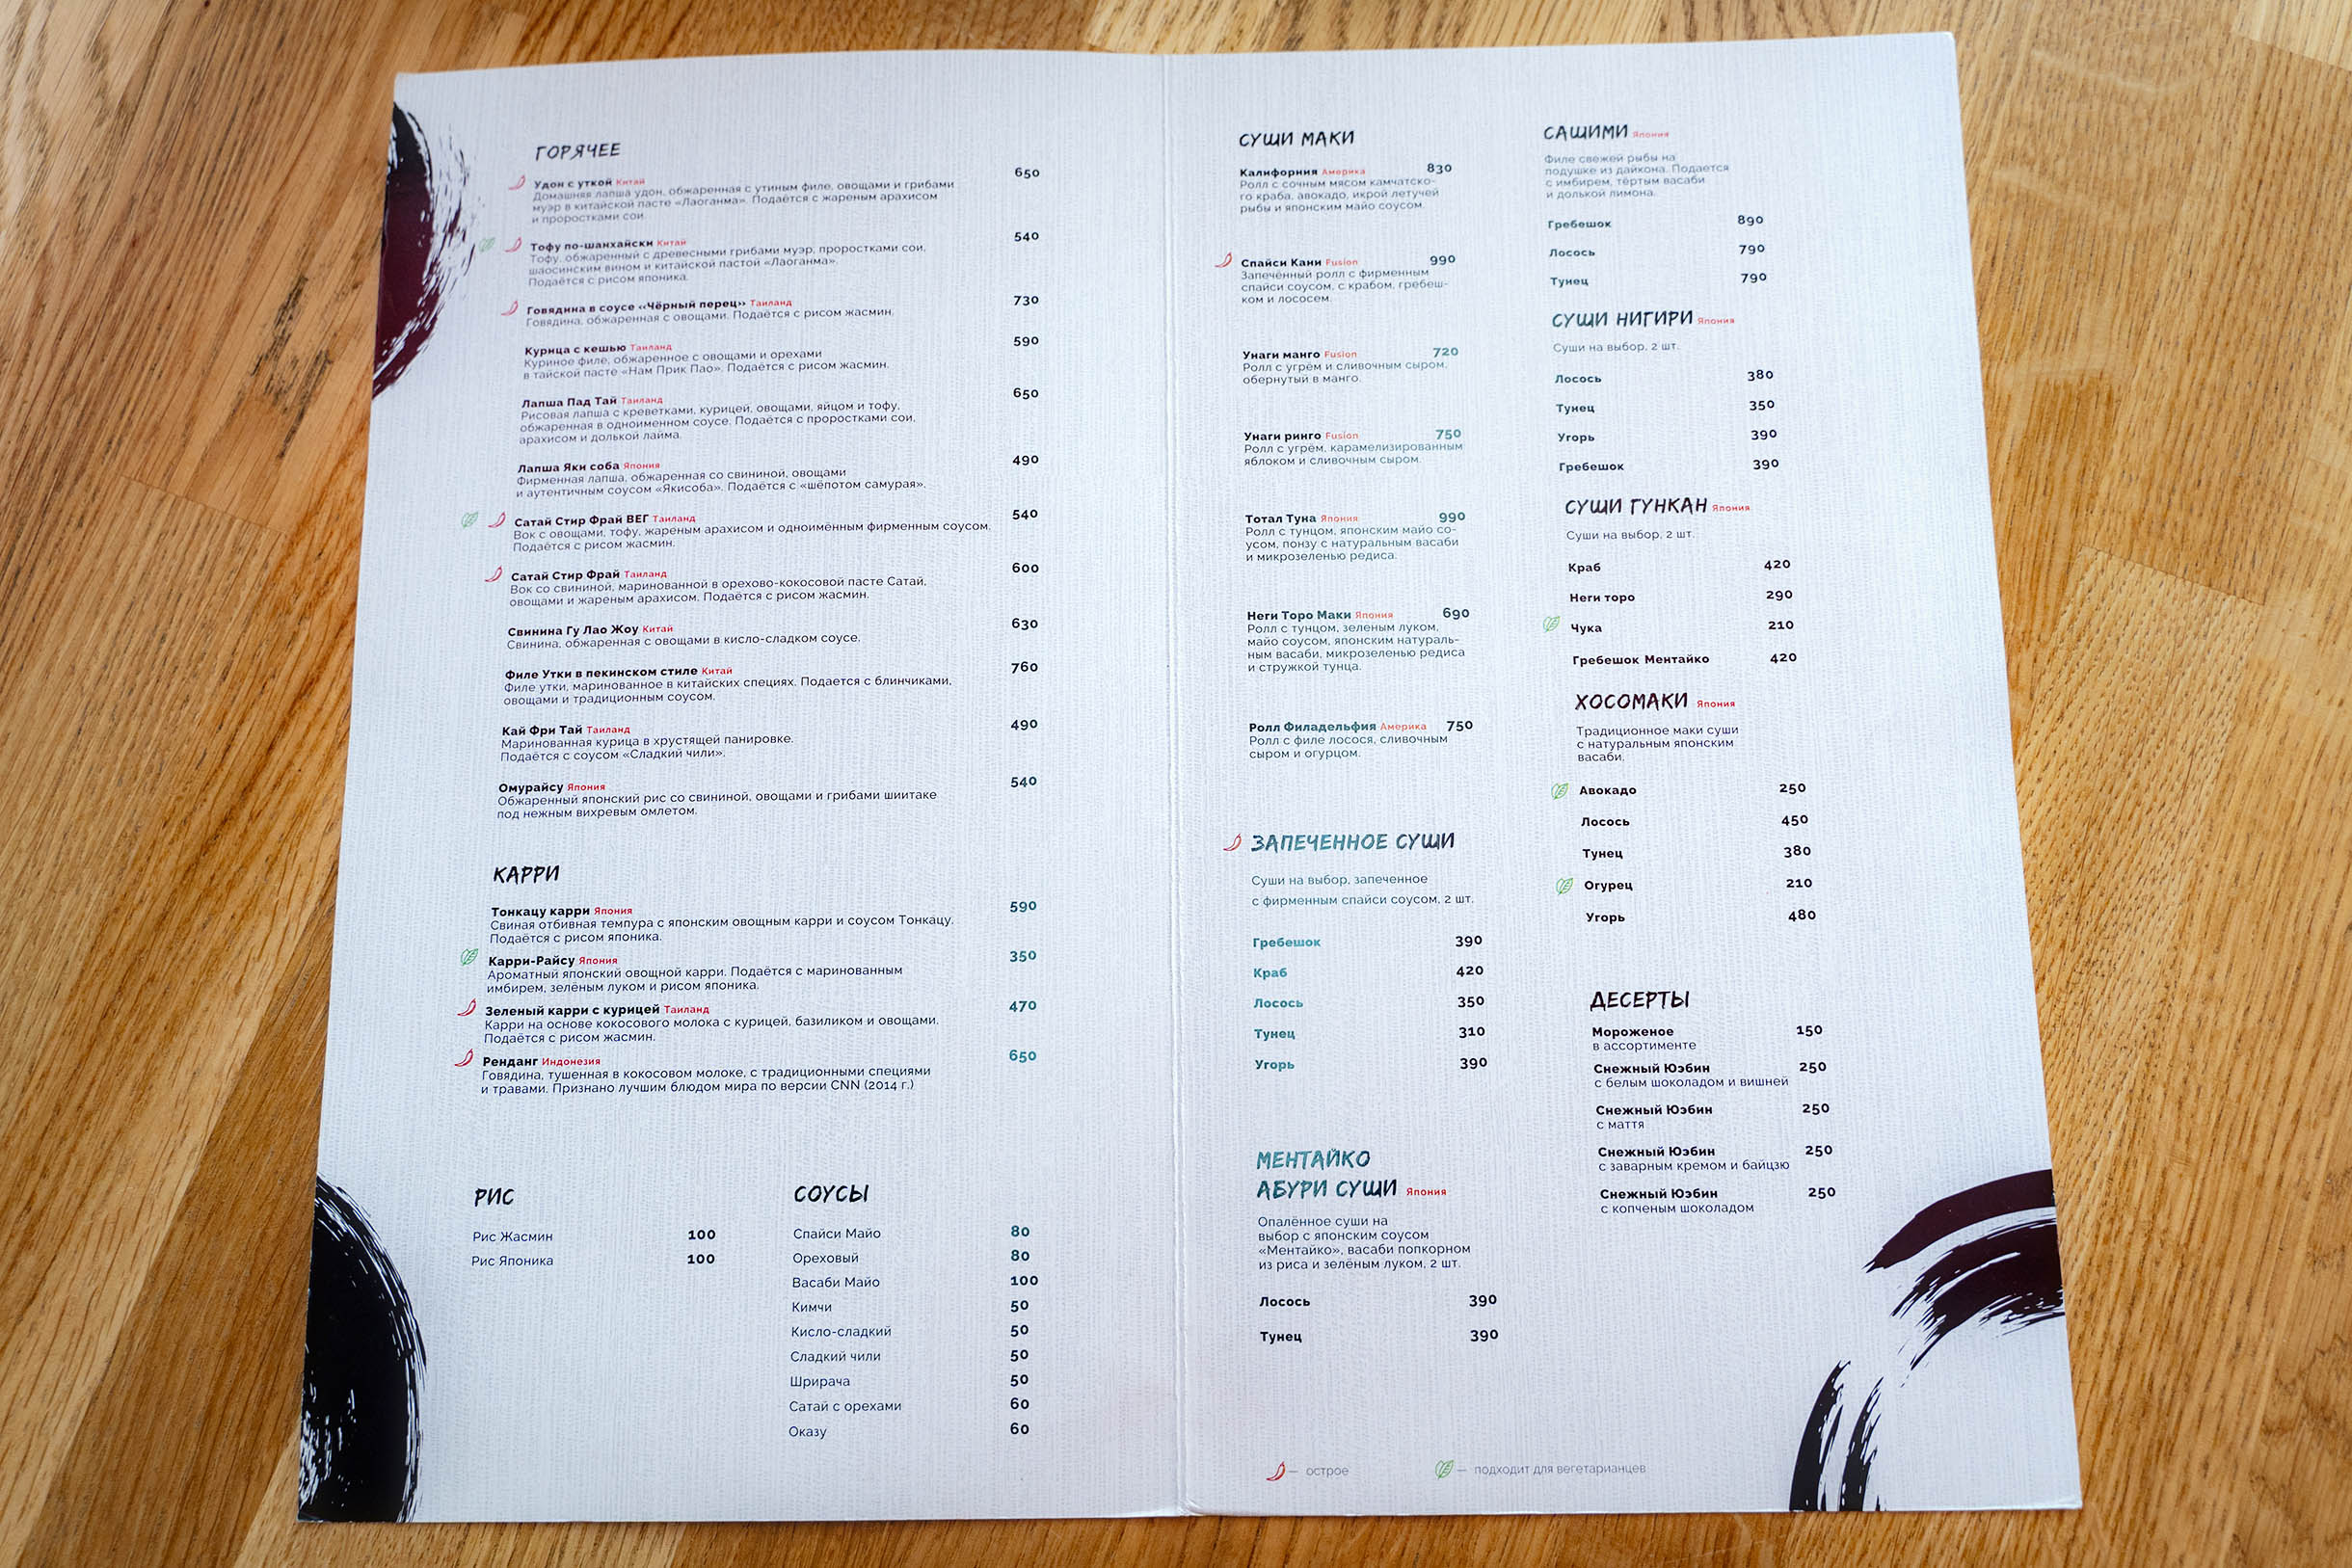 Неон, бумажные фонарики и котики манеки⁠-⁠неко — все обязательные атрибуты ресторана азиатской кухни на месте